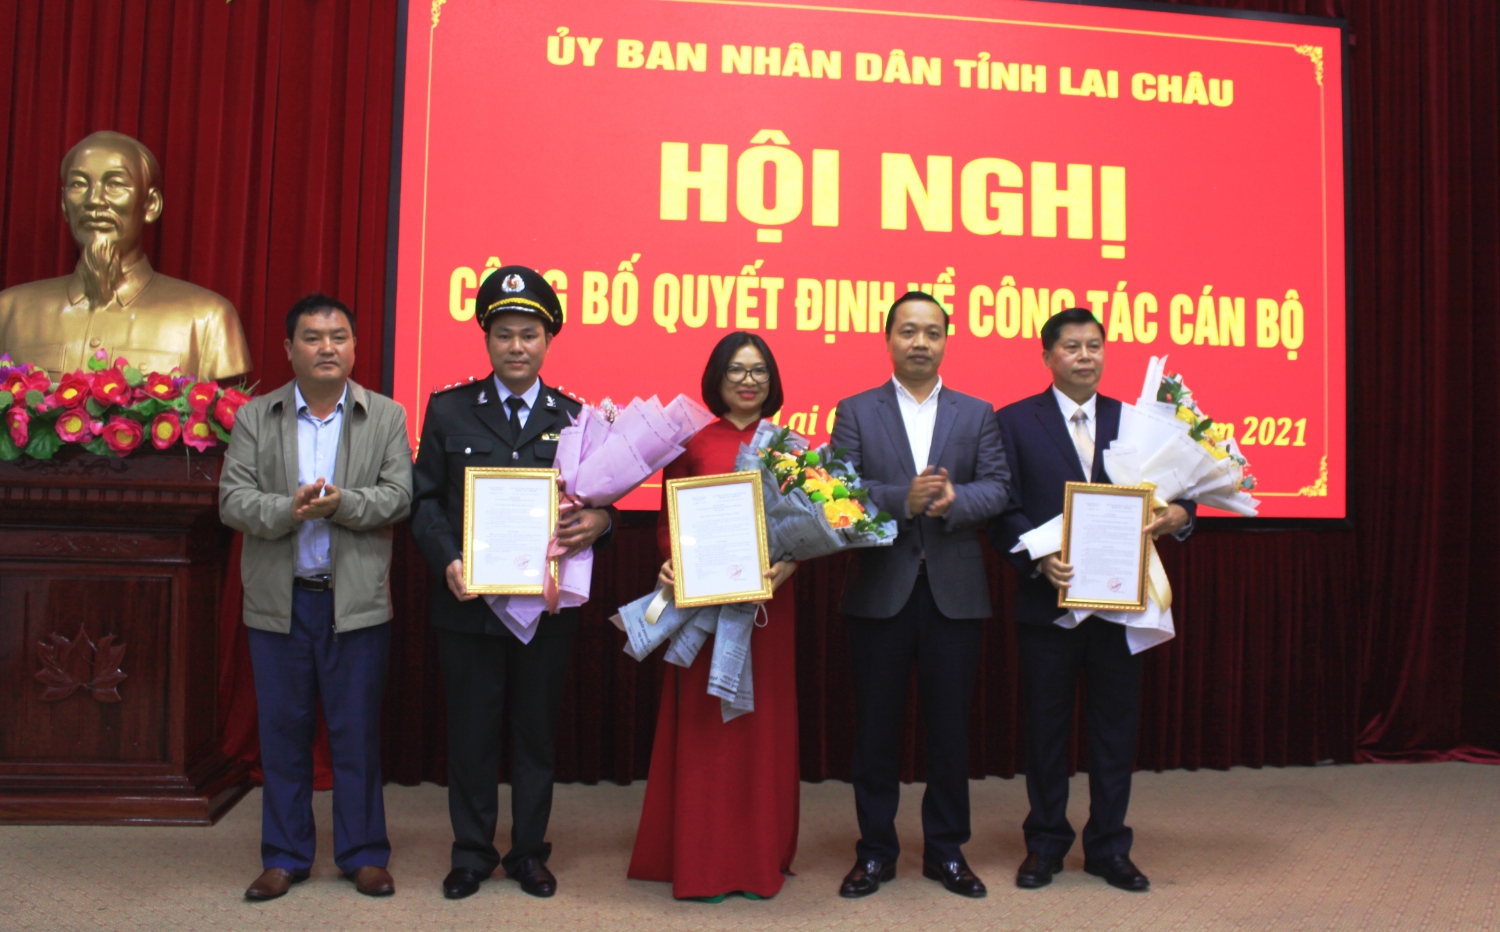 Các đồng chí lãnh đạo tỉnh trao quyết định bổ nhiệm và tặng hoa chúc mừng các đồng chí được bổ nhiệm